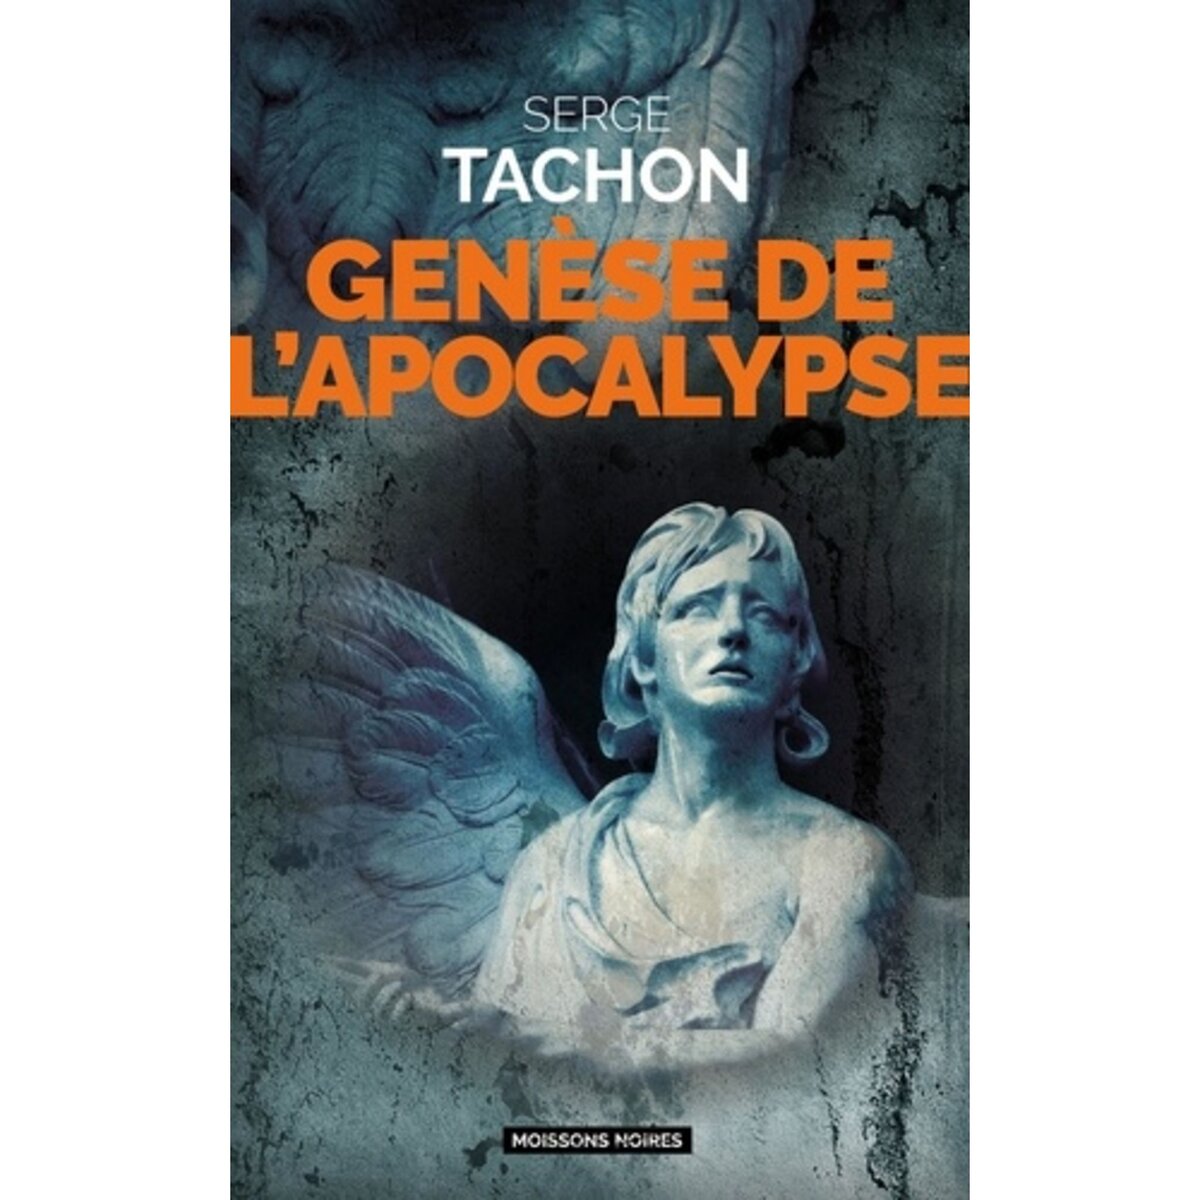  GENESE DE L'APOCALYPSE, Tachon Serge